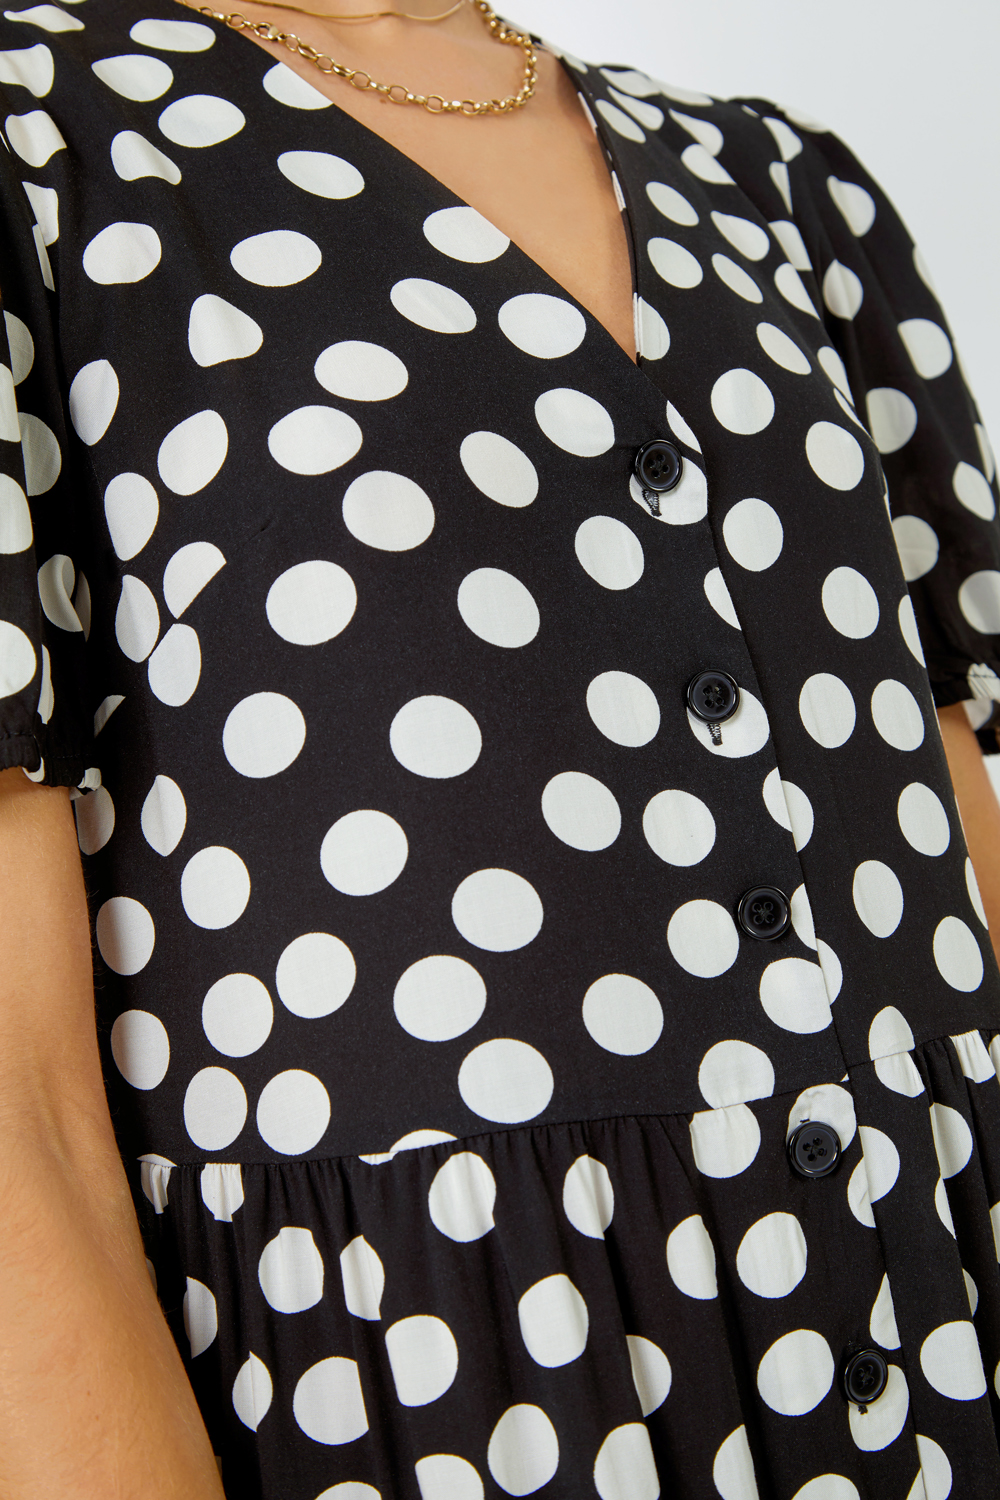 Black Polka Dot Print Culotte Jumpsuit, Image 5 of 5